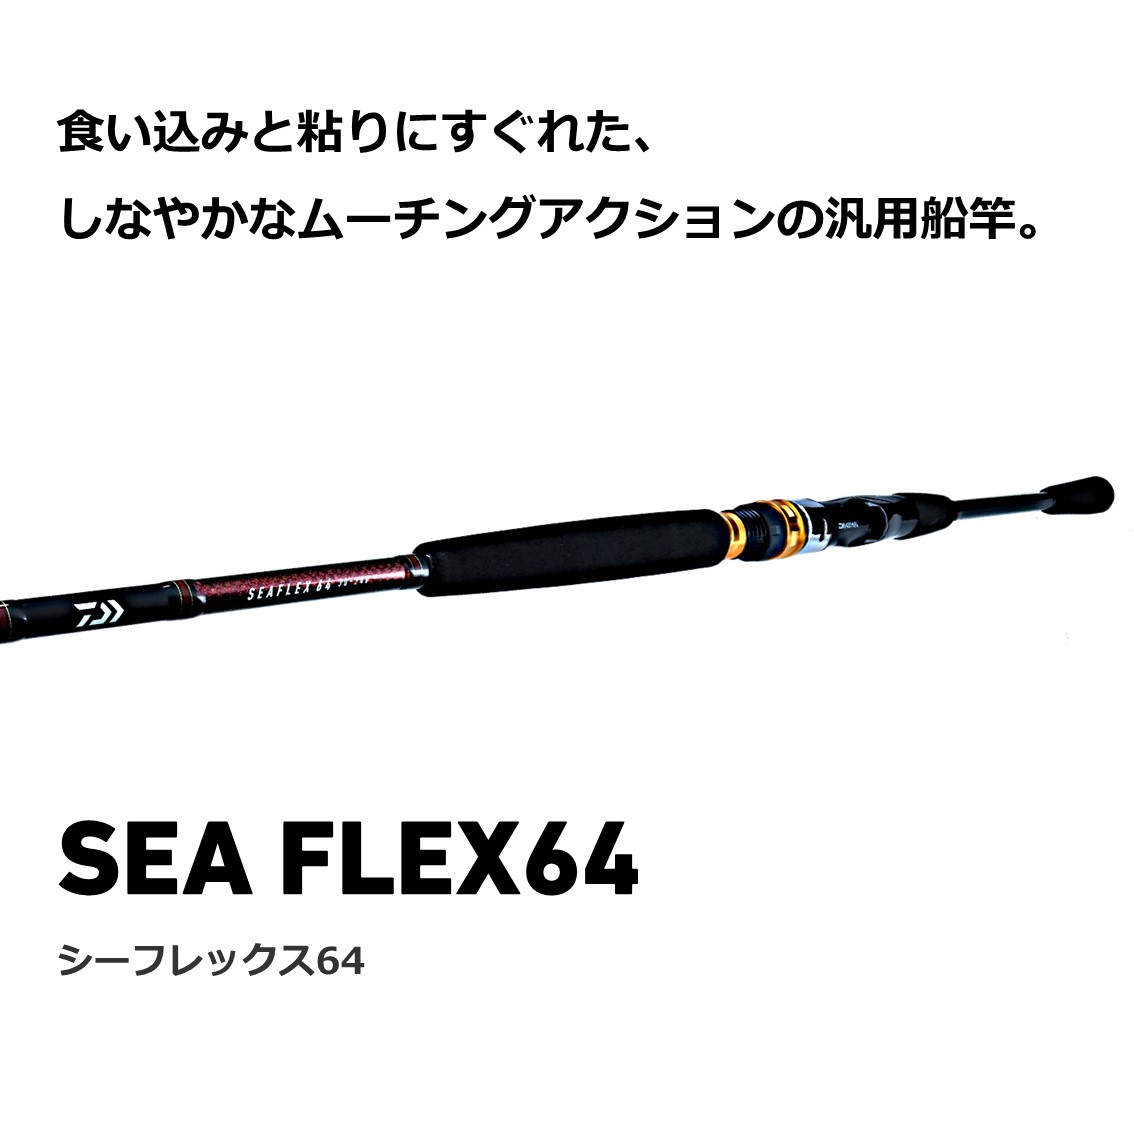 ダイワ シーフレックス64 50-210 N (船竿) - 釣り具の販売、通販なら 